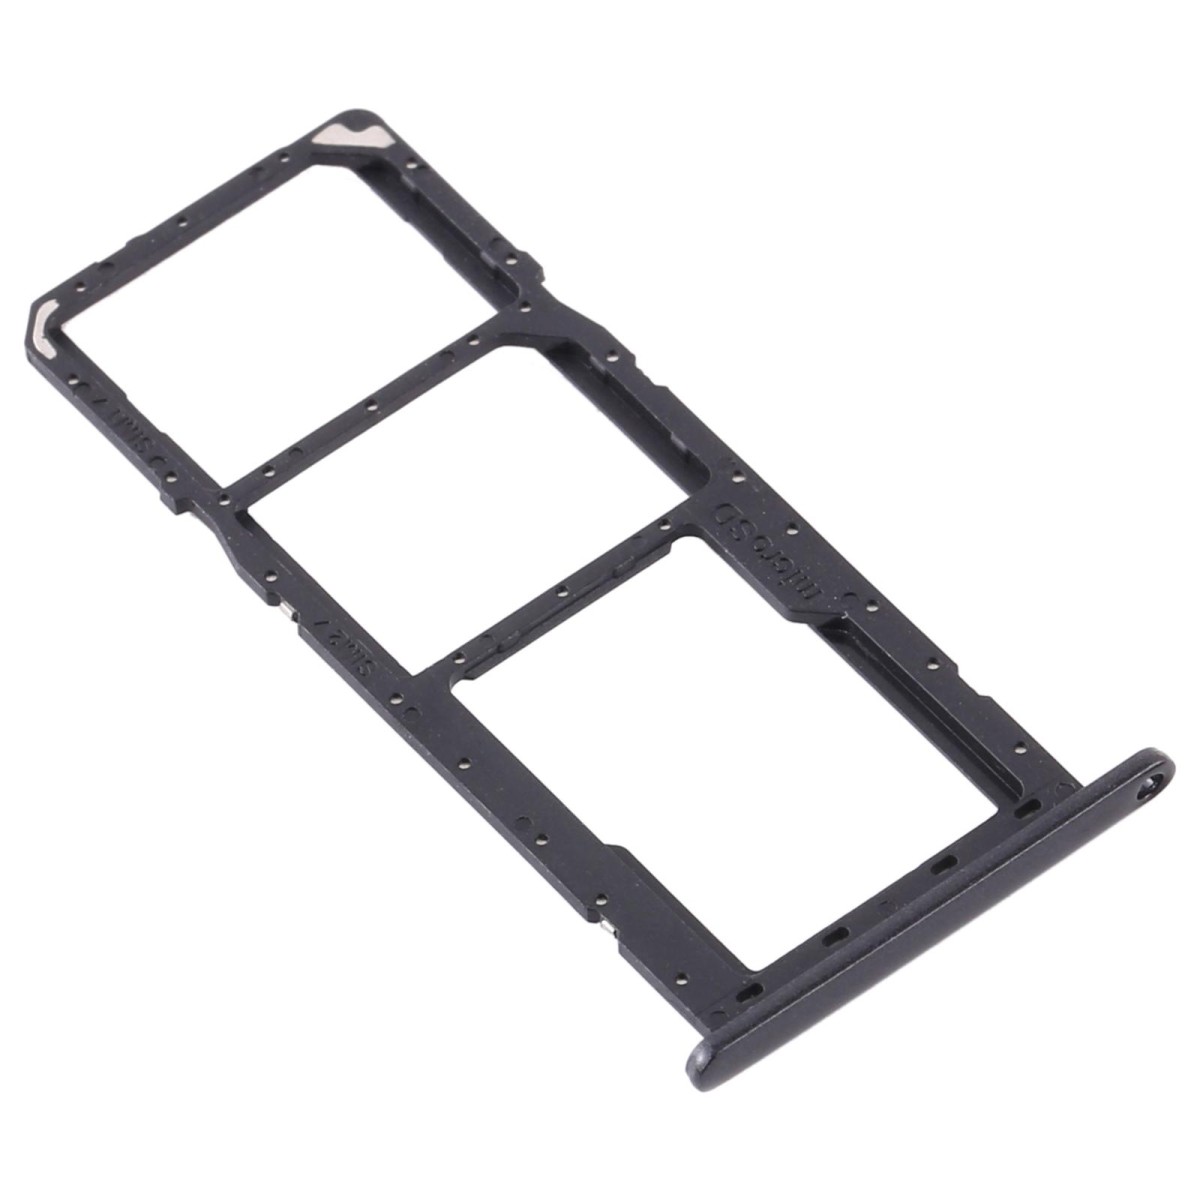 For Samsung Galaxy A11 SM-A115 SIM Card Tray + SIM Card Tray + Micro SD Card Tray (Black)